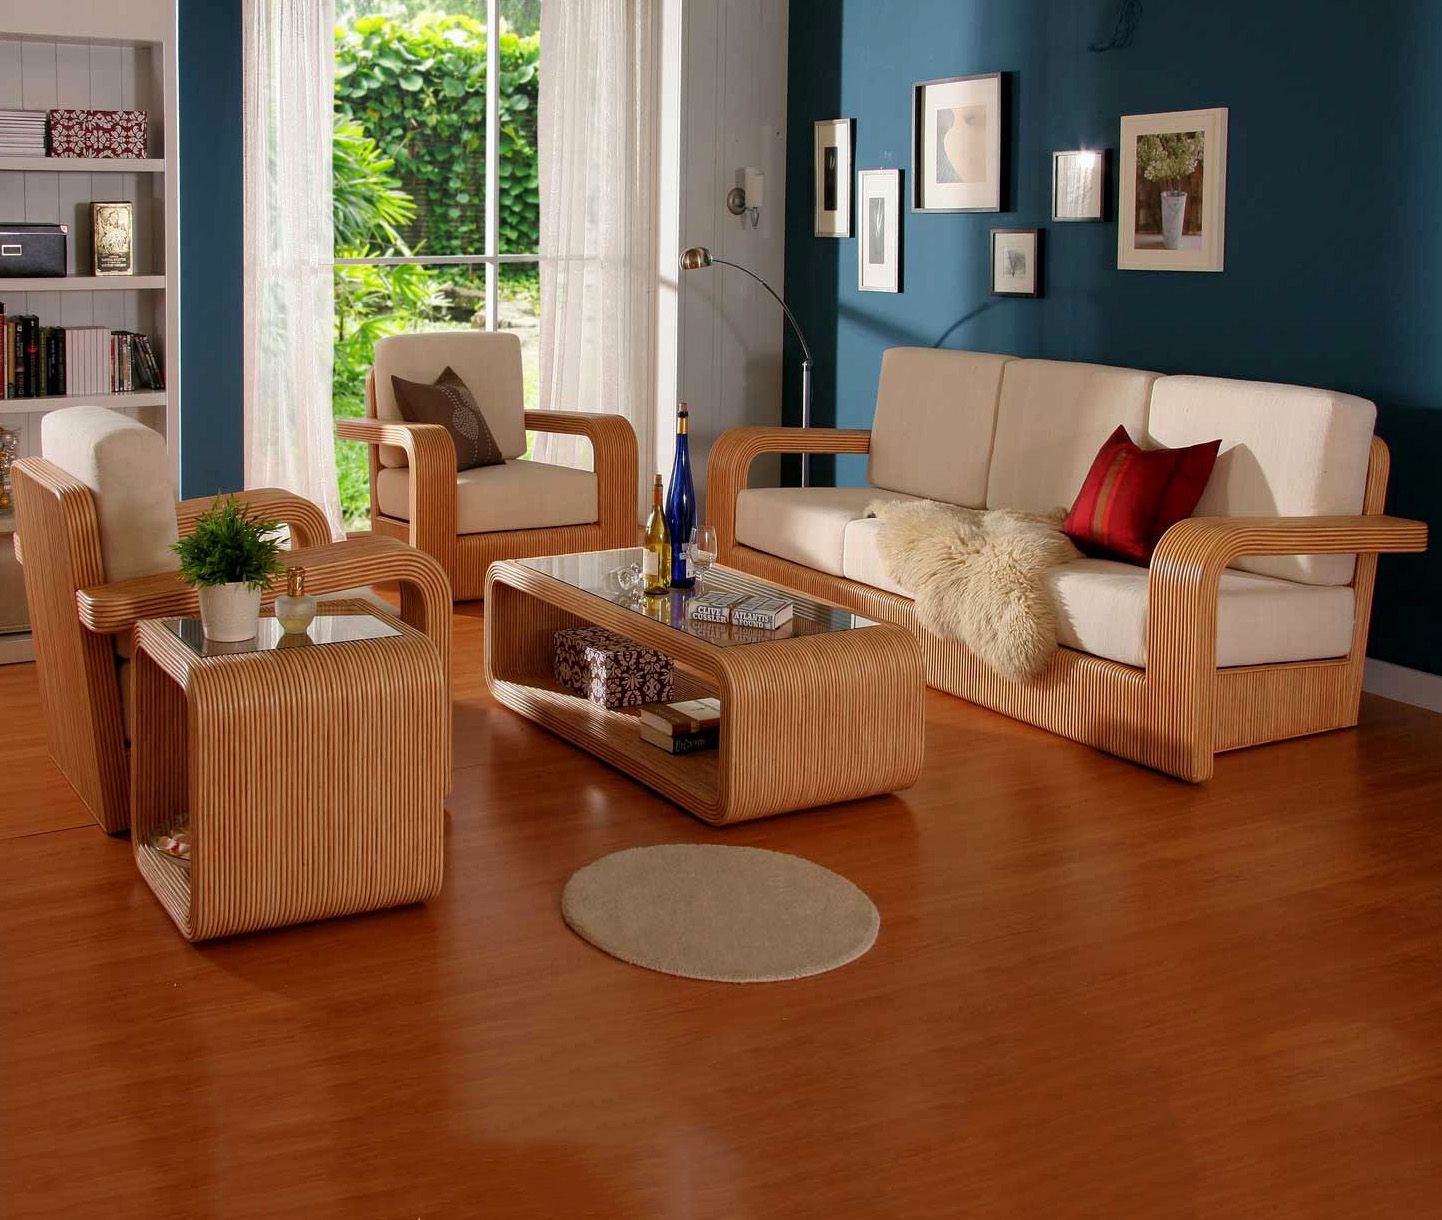 Bàn ghế gỗ phòng khách là thiết bị không thể thiếu trong không gian sống của gia đình bạn. Với kiểu dáng sang trọng, chất liệu gỗ cao cấp, bàn ghế gỗ phòng khách sẽ làm cho căn phòng của bạn thêm đẳng cấp và ấm áp hơn.